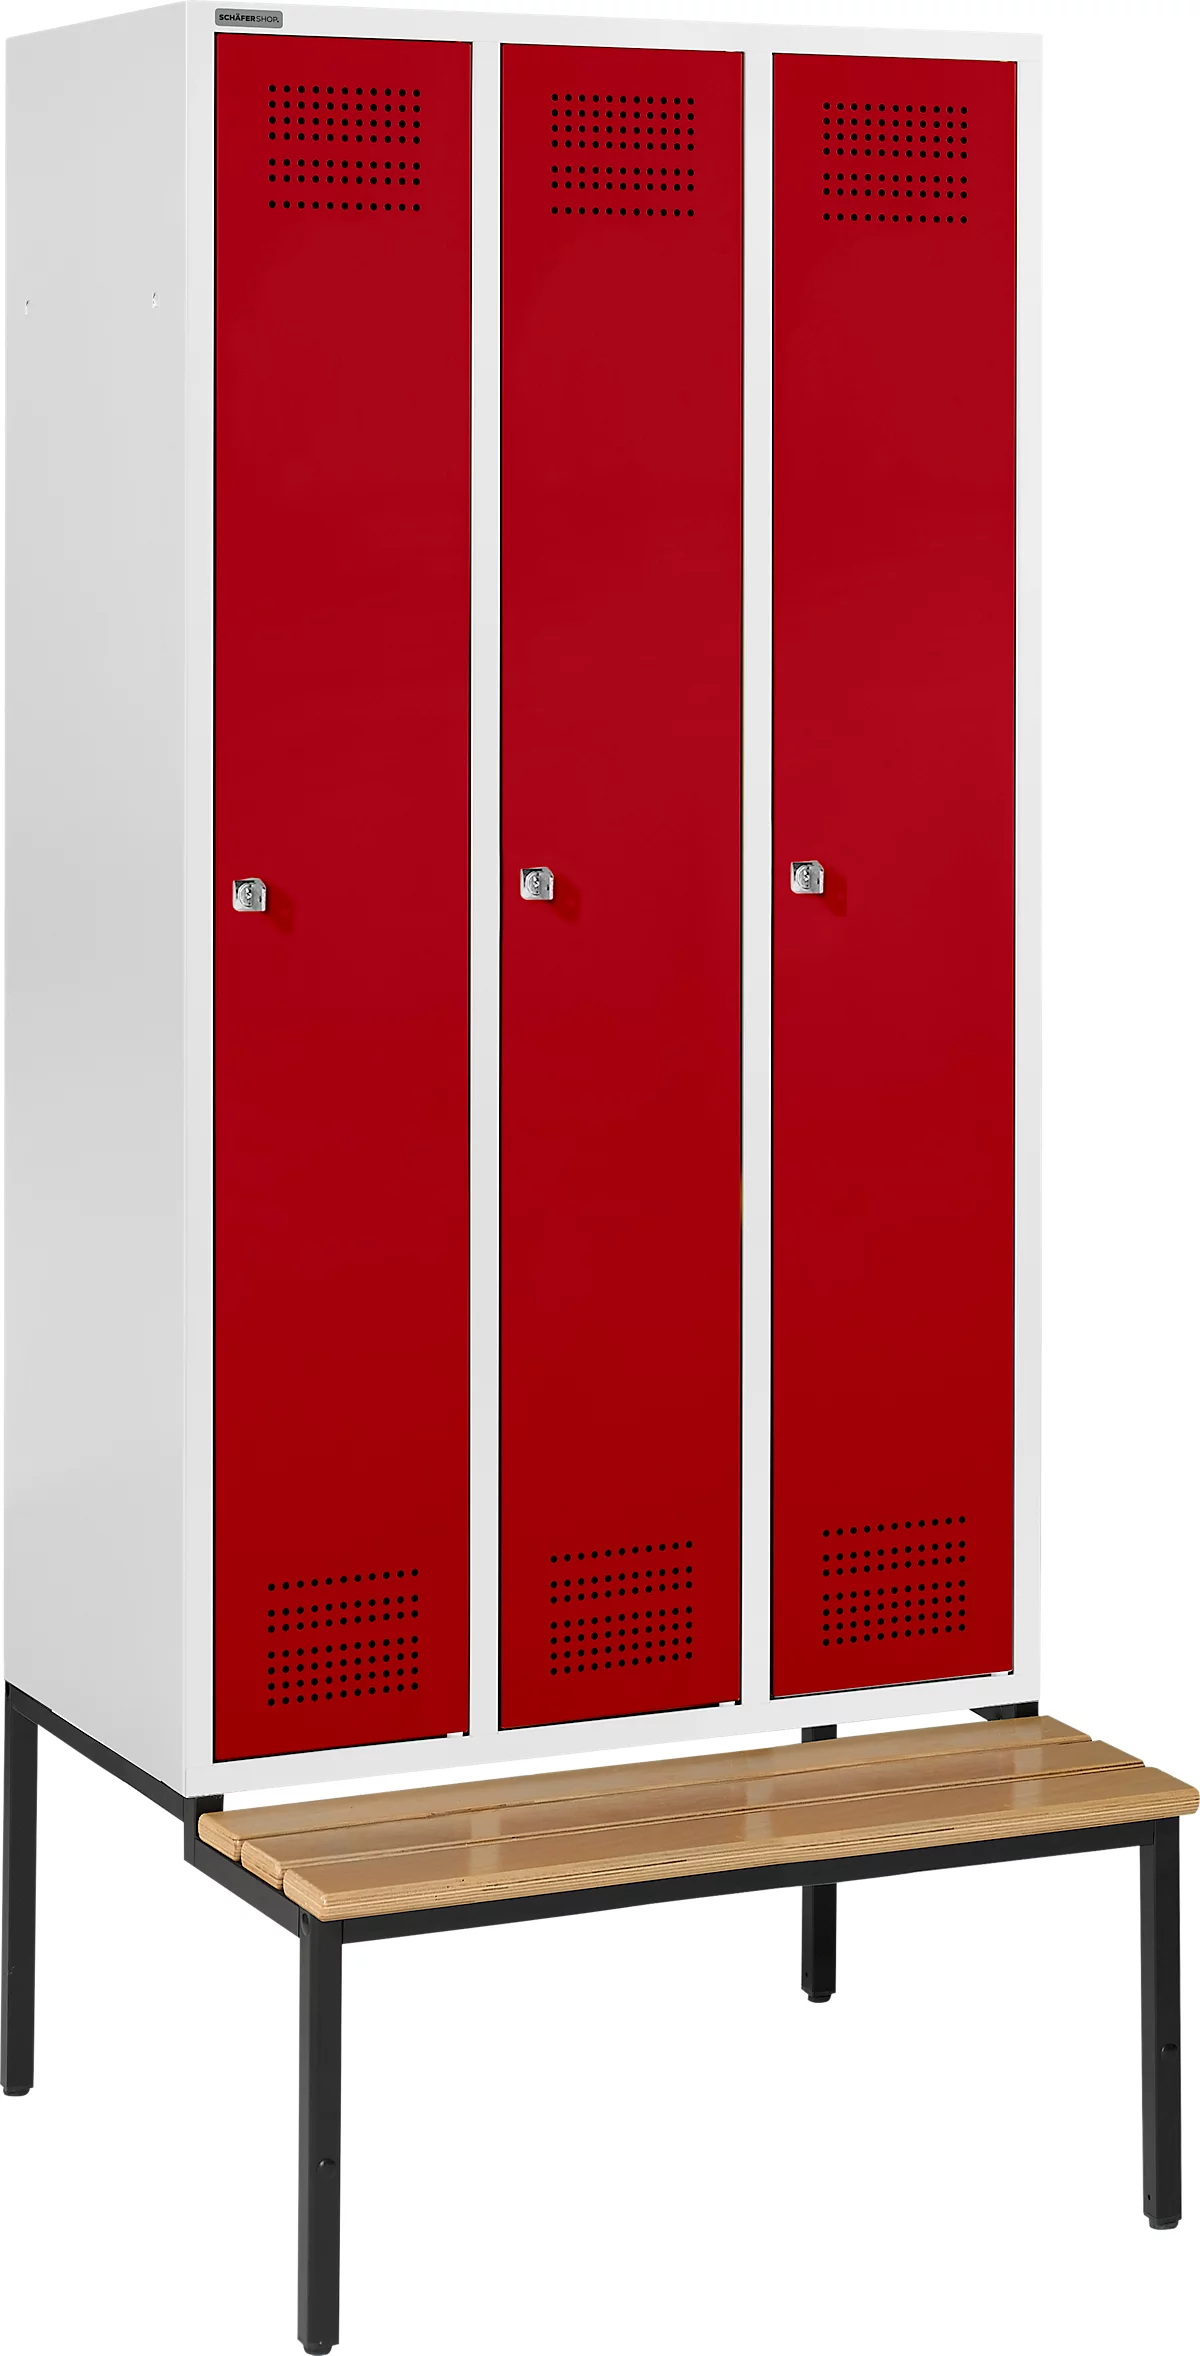 Schäfer Shop Genius Taquilla con banco, 3 compartimentos, cerradura de cilindro, gris luminoso/rojo